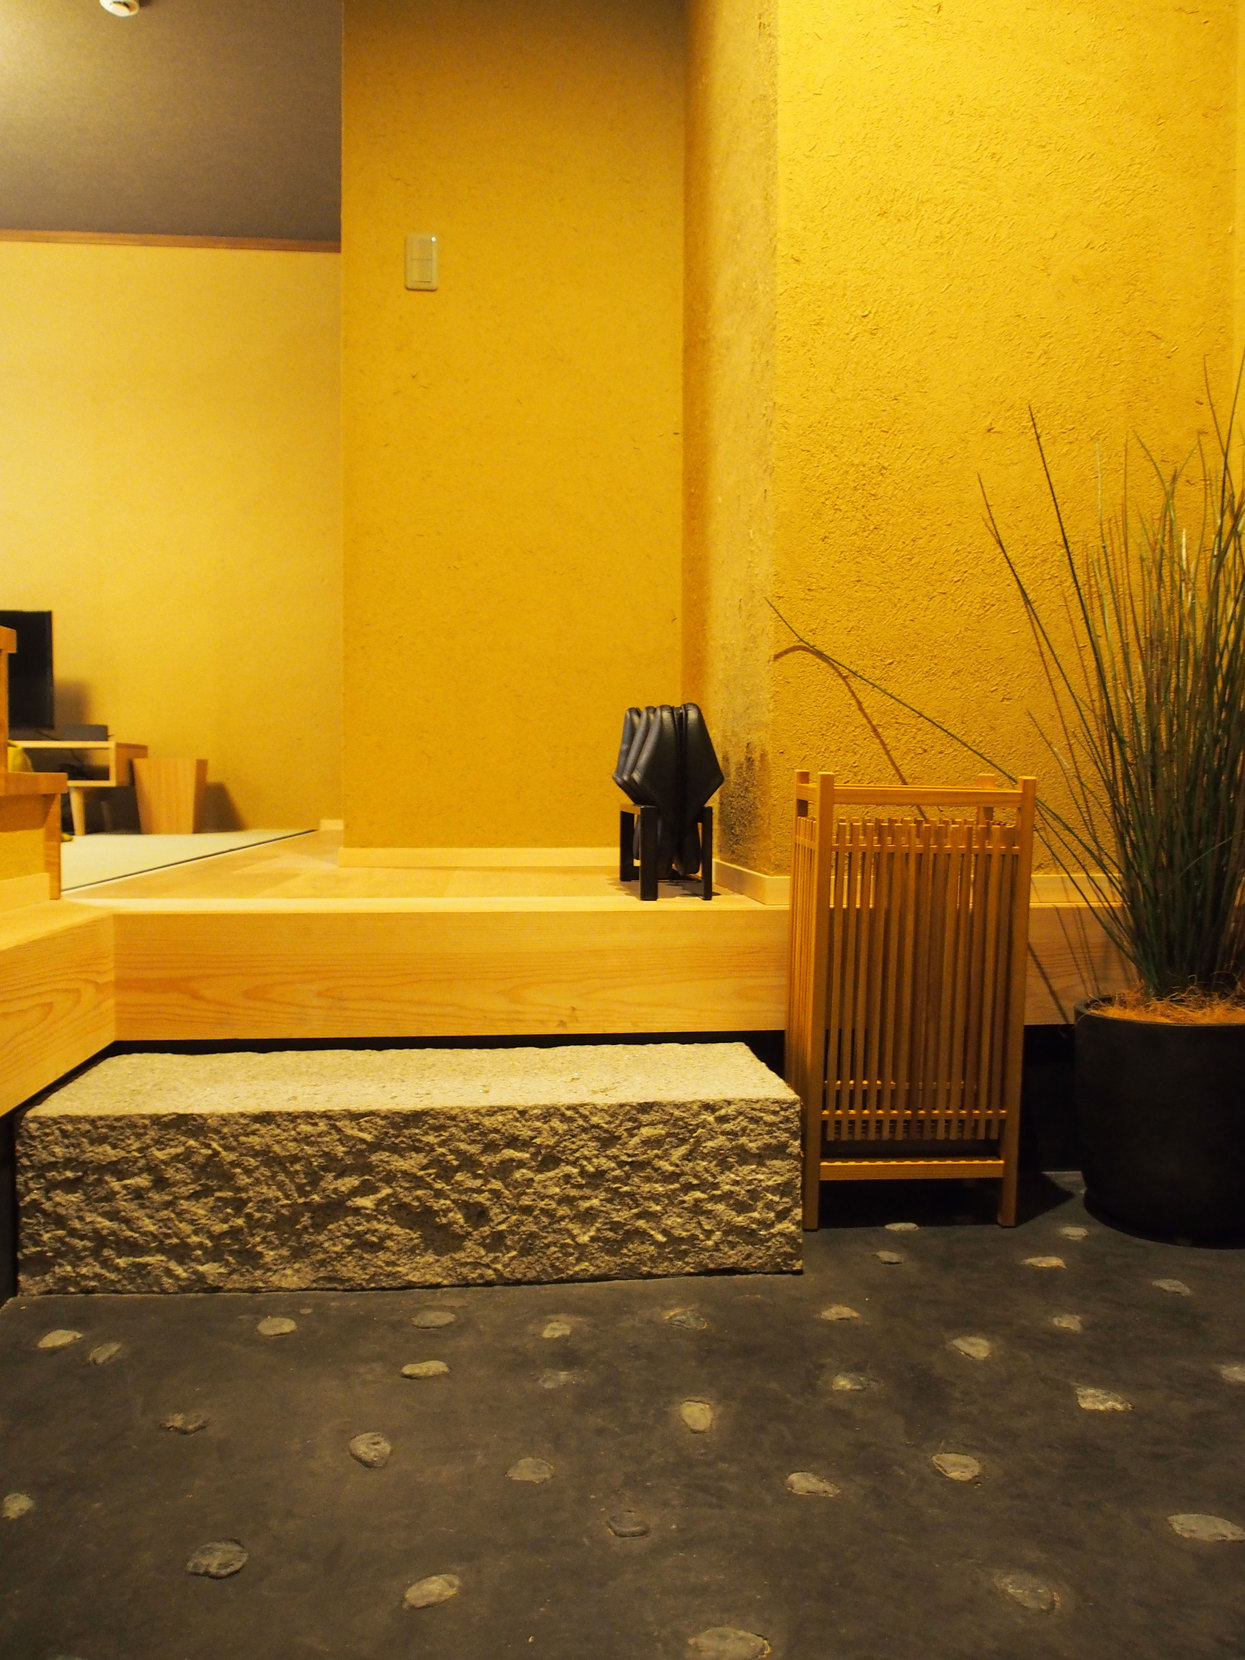 【キャンセル返金不可】お得な料金で設備充実の連棟型町家No.10 京都で気軽に京都暮らしを体験♪